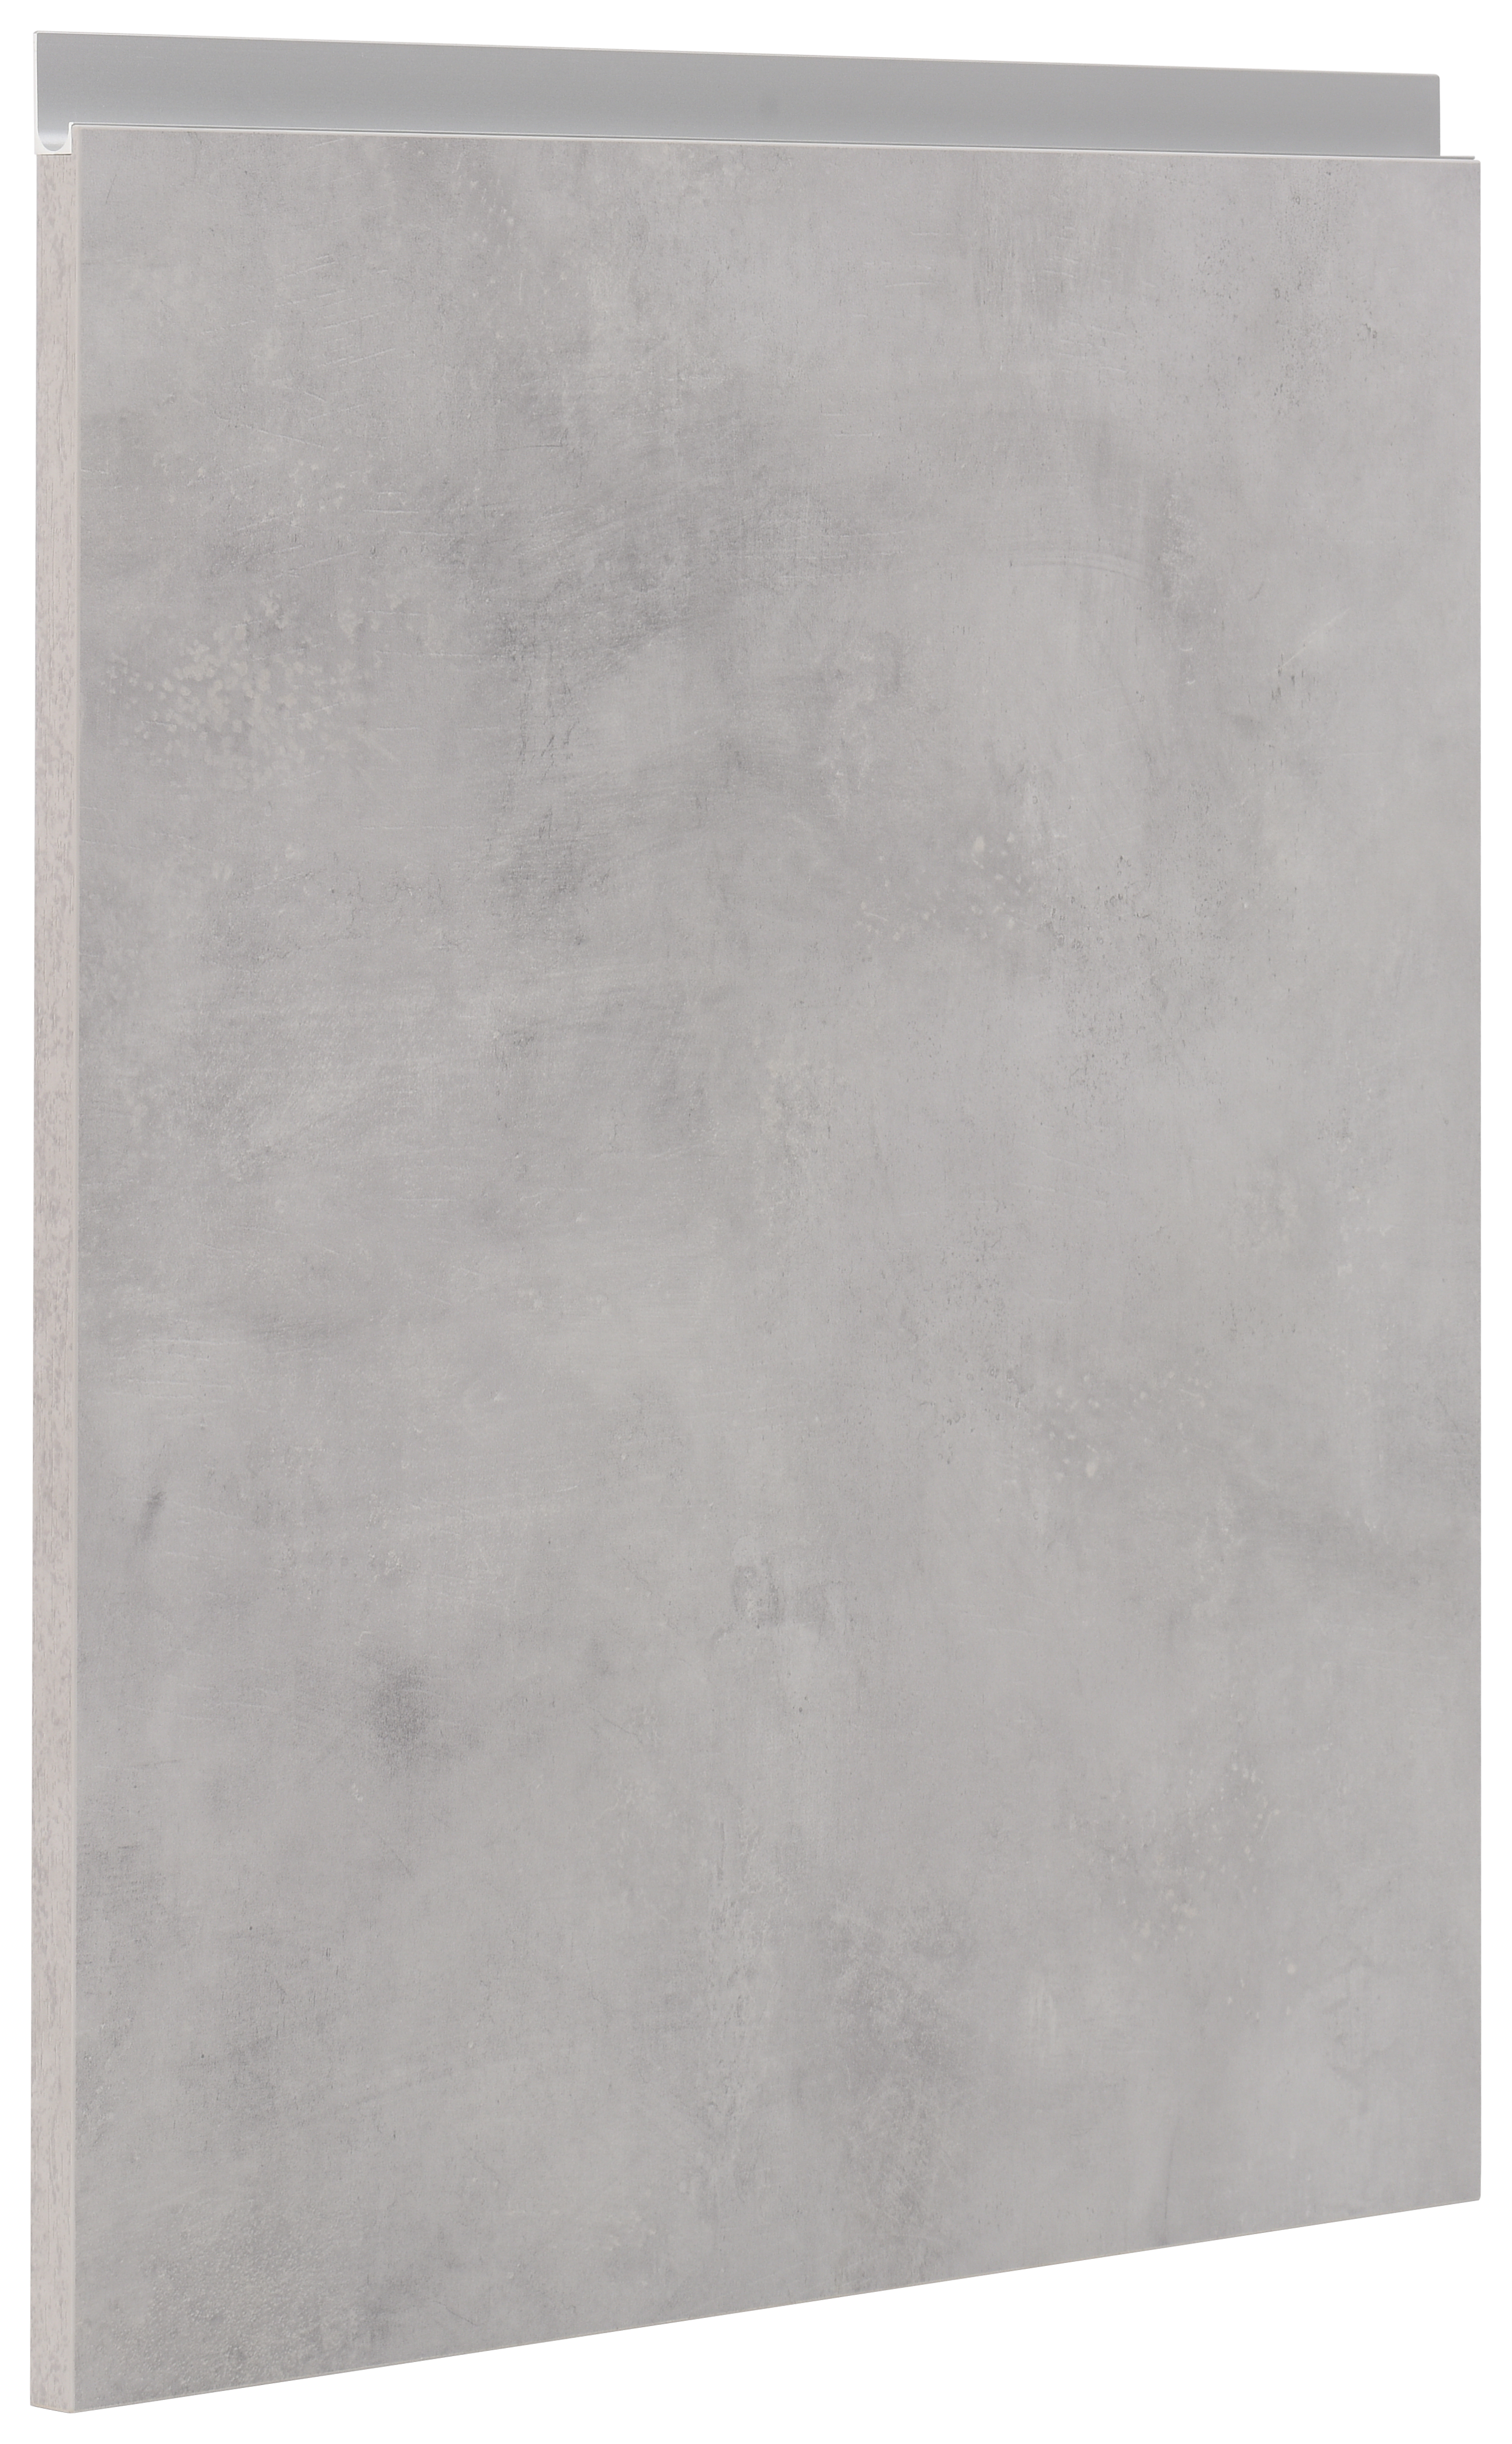 Puerta mueble de cocina mikonos cemento claro 59,7x63,7 cm